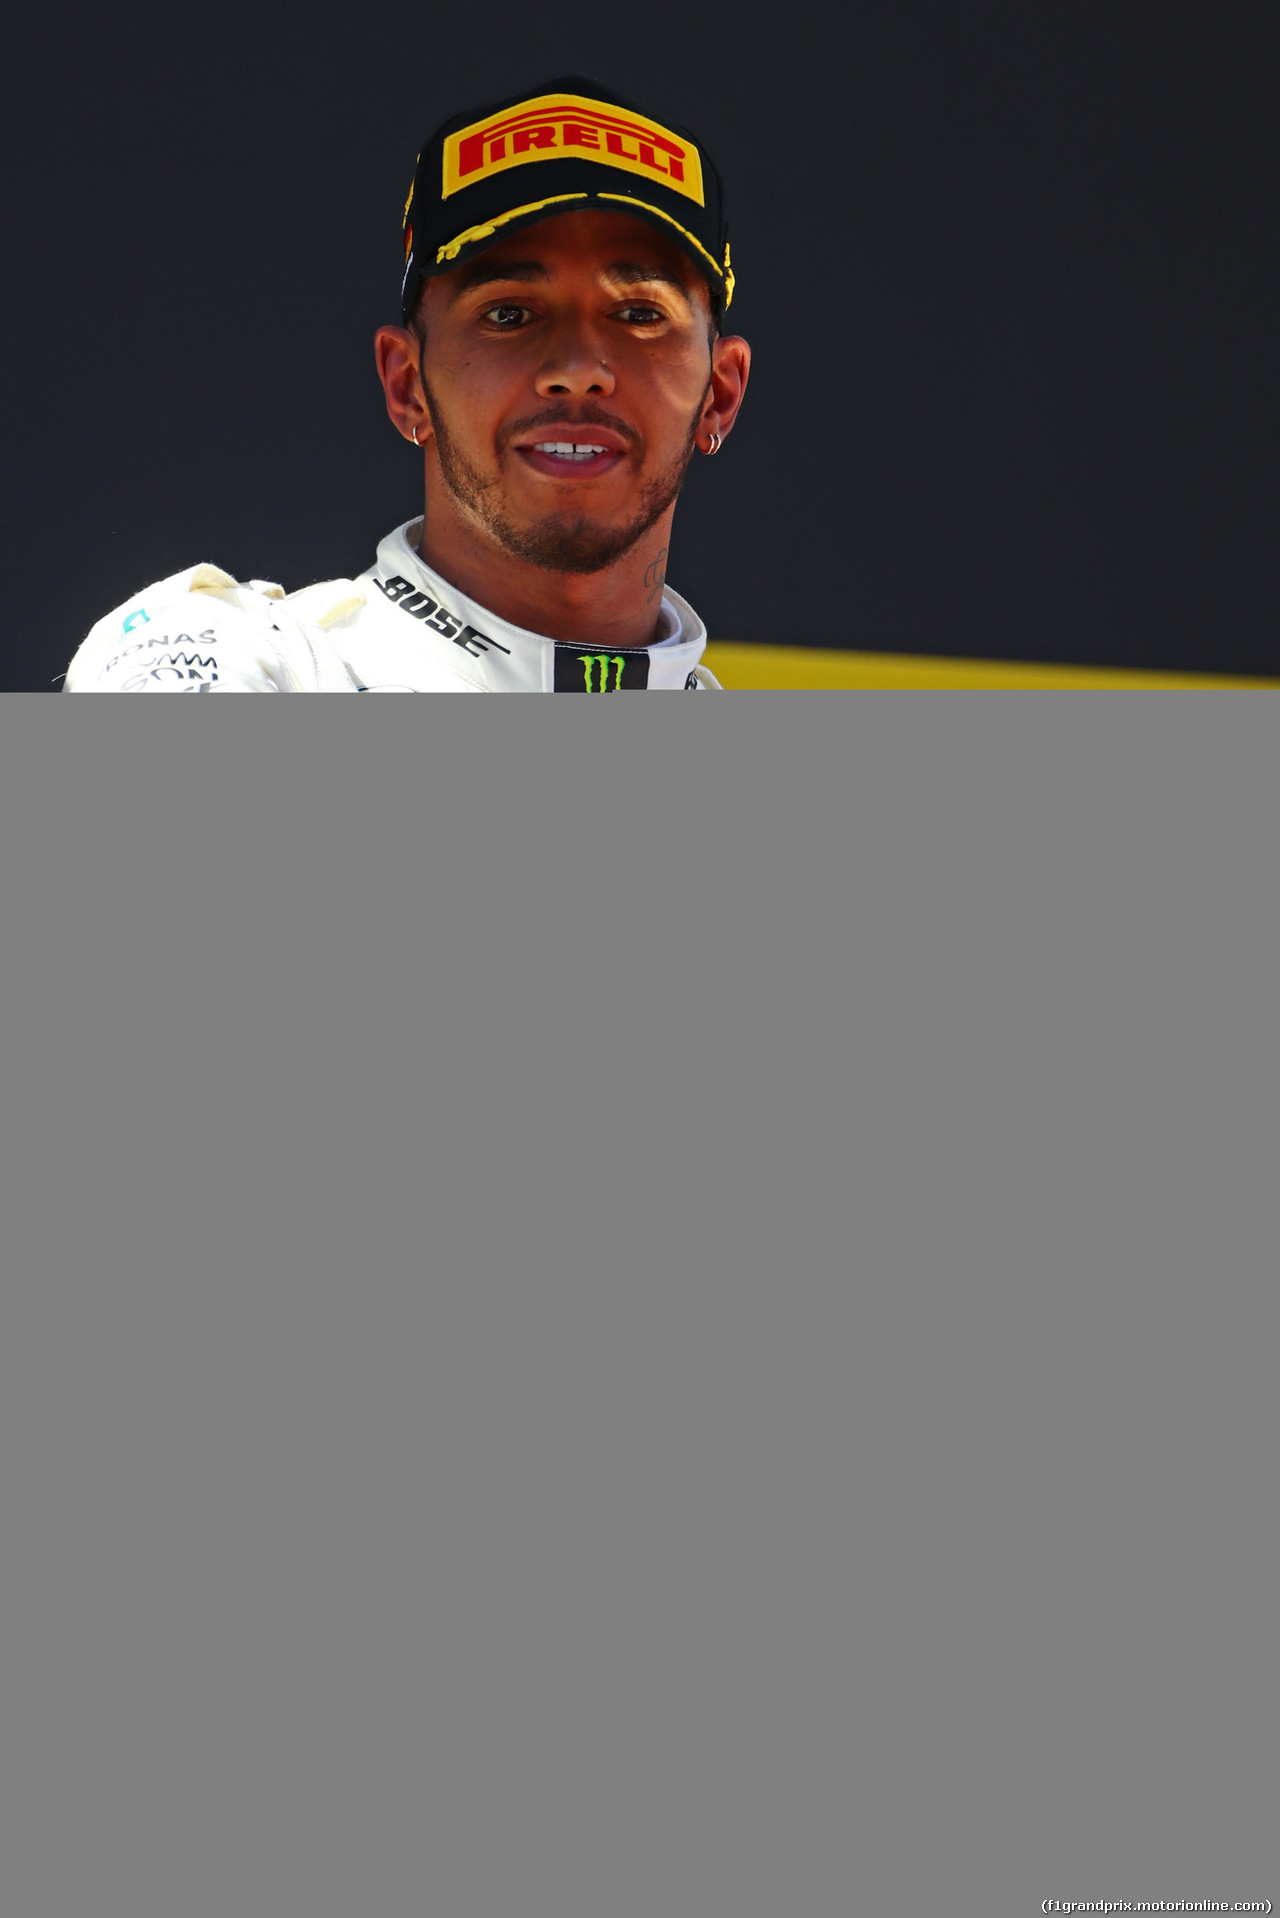 GP SPAGNA, Lewis Hamilton (GBR) Mercedes AMG F1  
14.05.2017. 